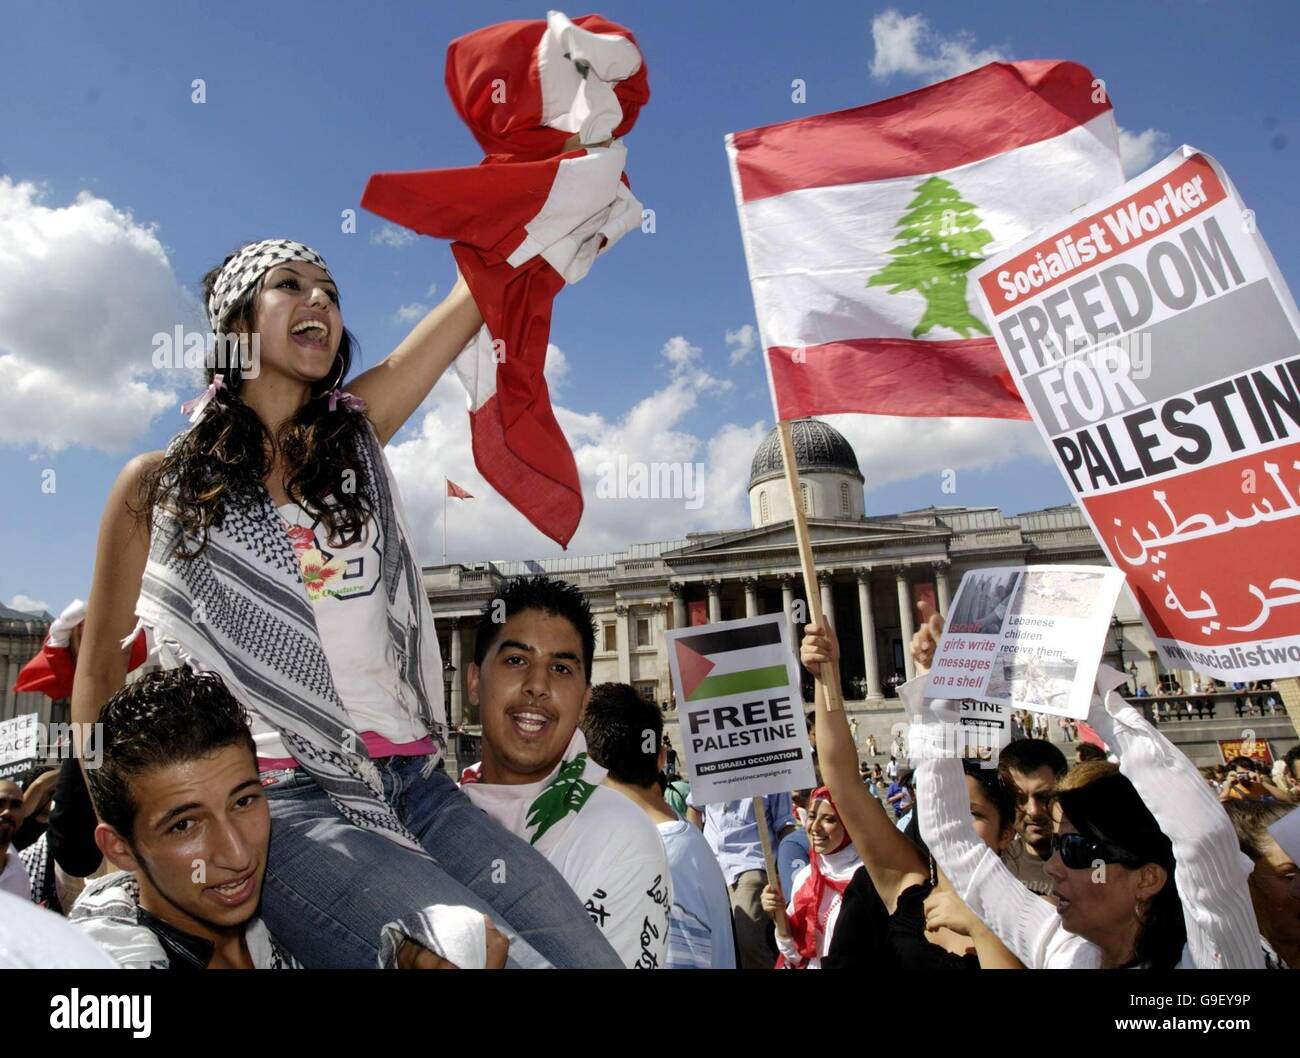 Demonstranten versammeln sich auf dem Trafalgar Square in London, um libanesische und palästinensische Fahnen und Banner zu fliegen, die einen Waffenstillstand im Libanon fordern. Stockfoto